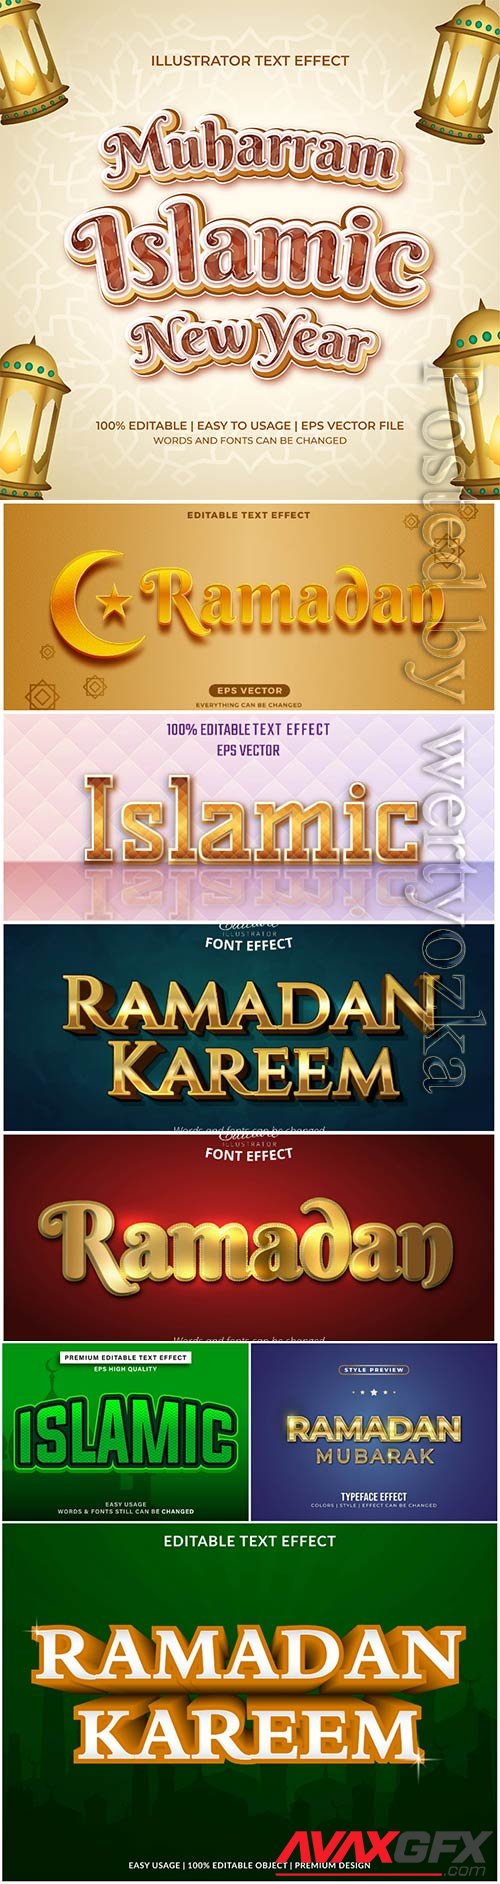 Islamic text effect editable vector